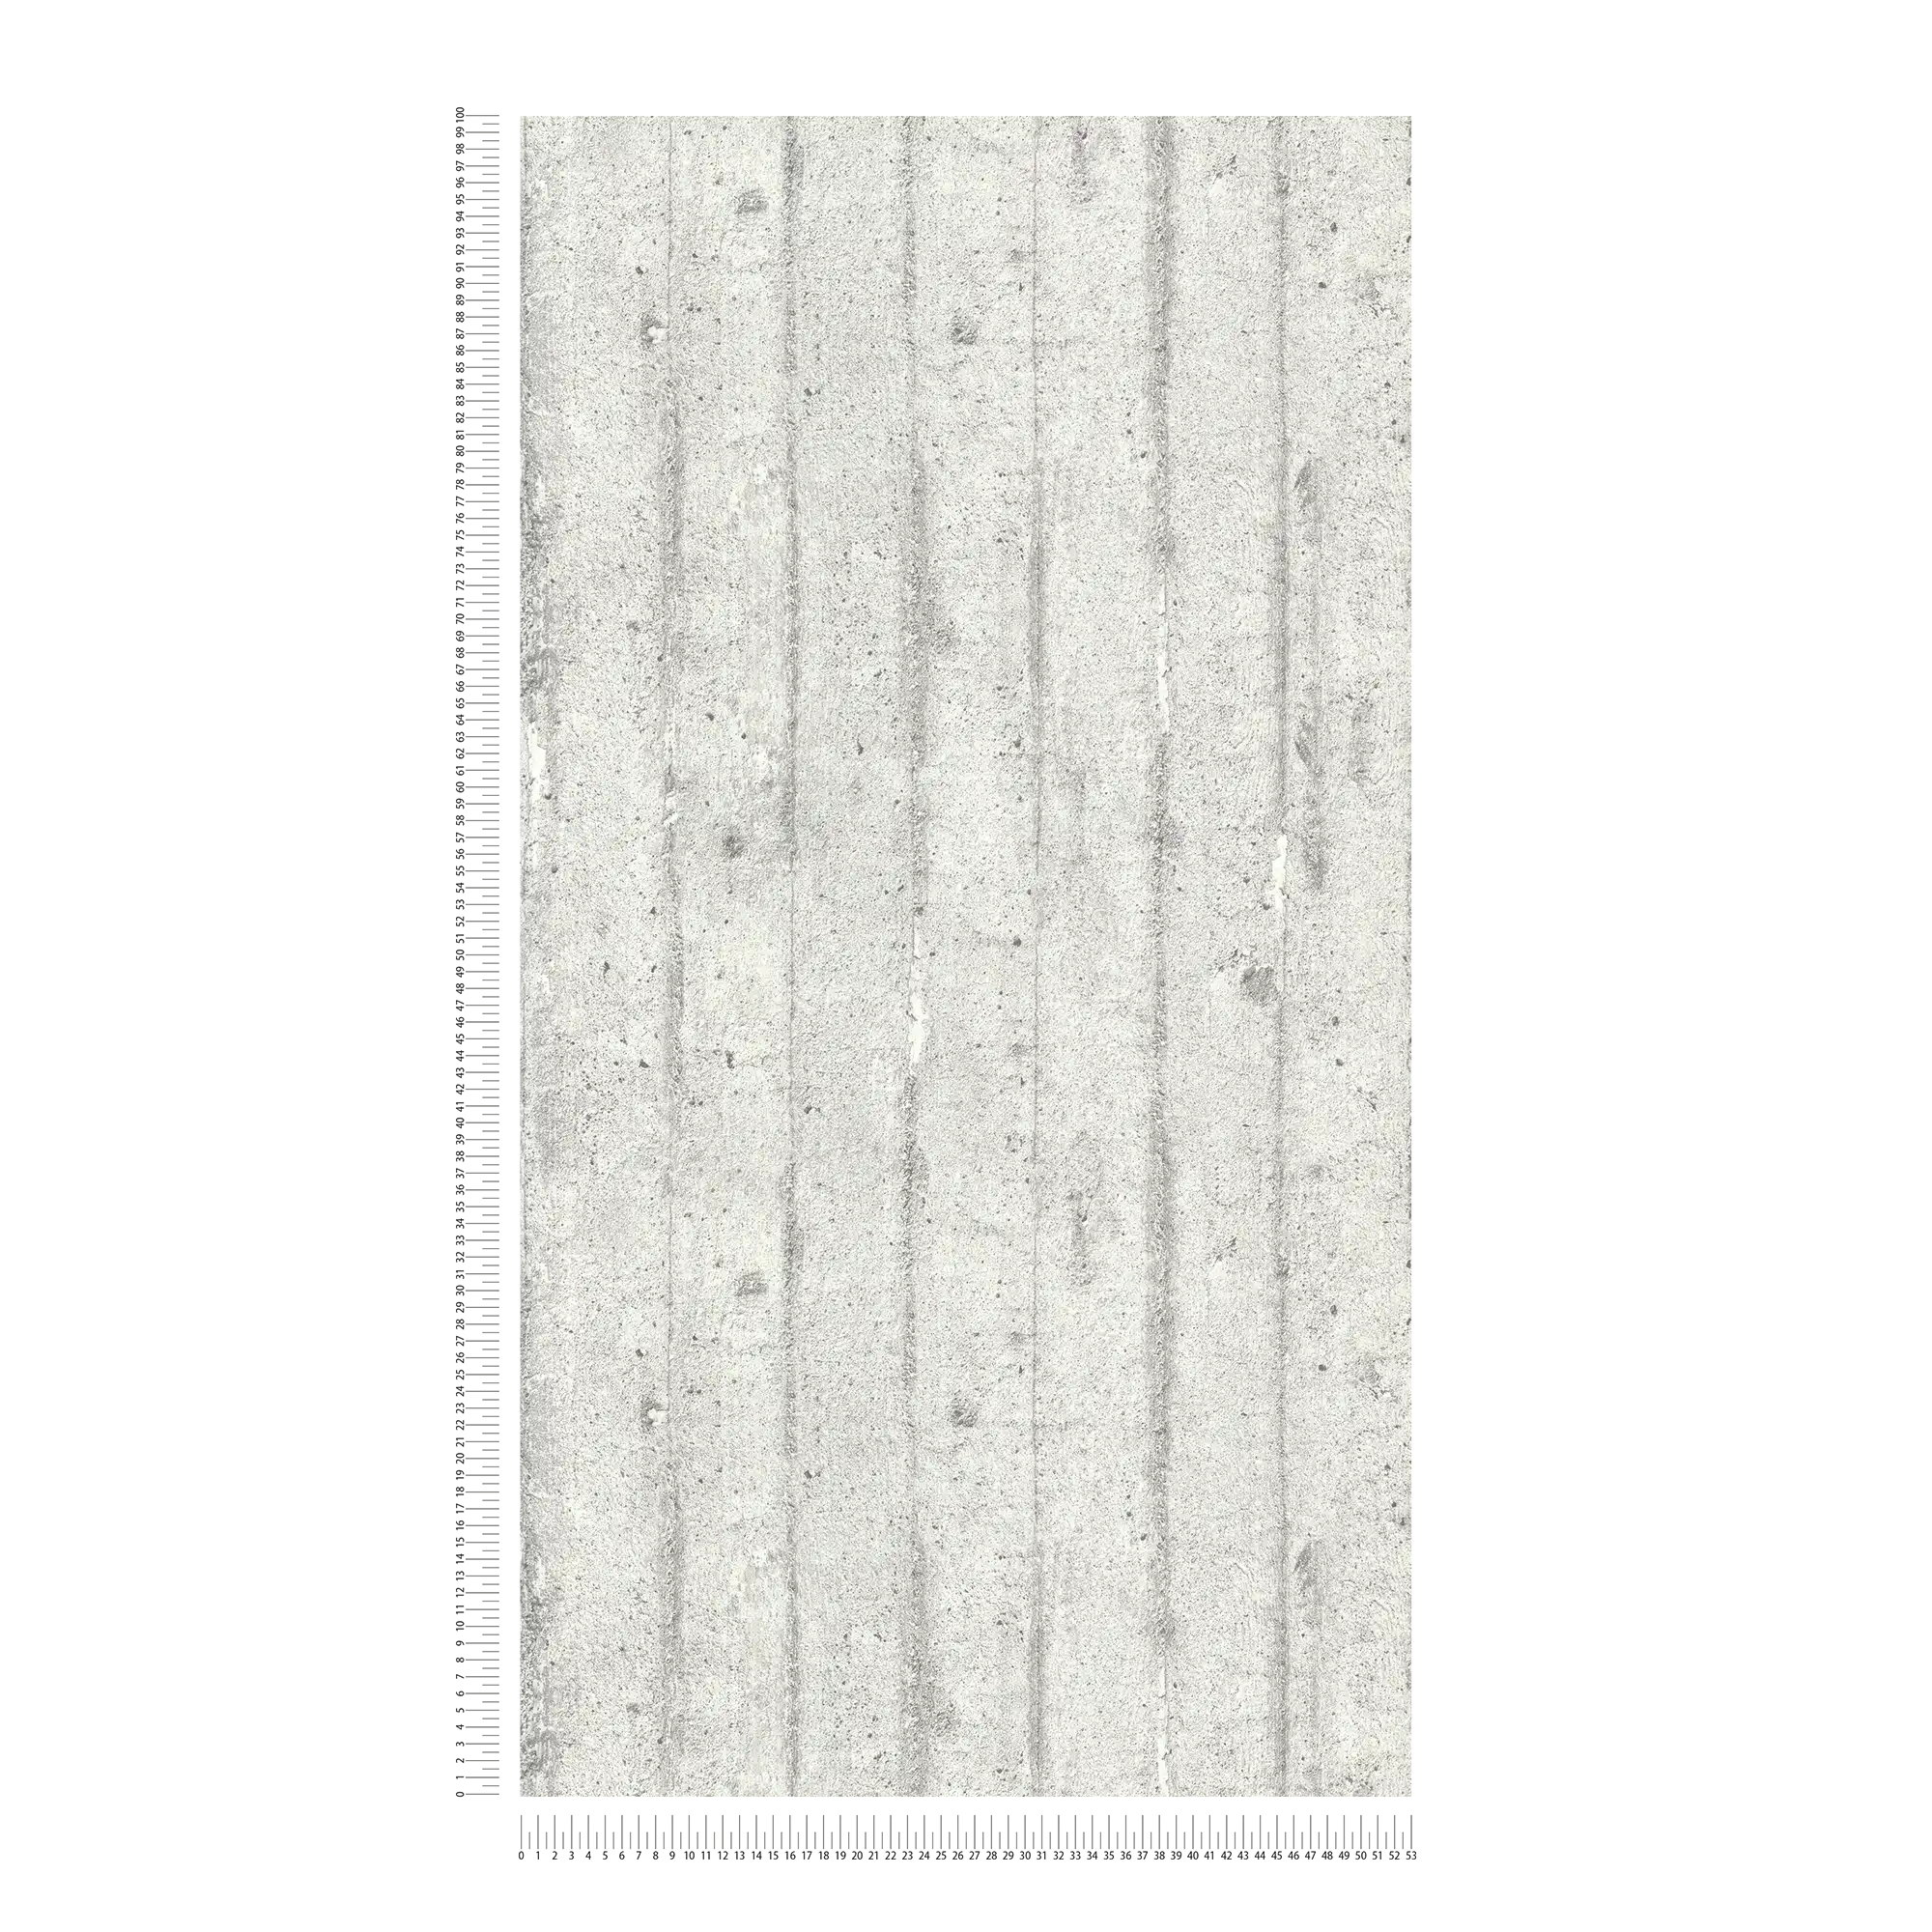             Carta da parati effetto cemento, cemento grezzo per casseforme - grigio
        